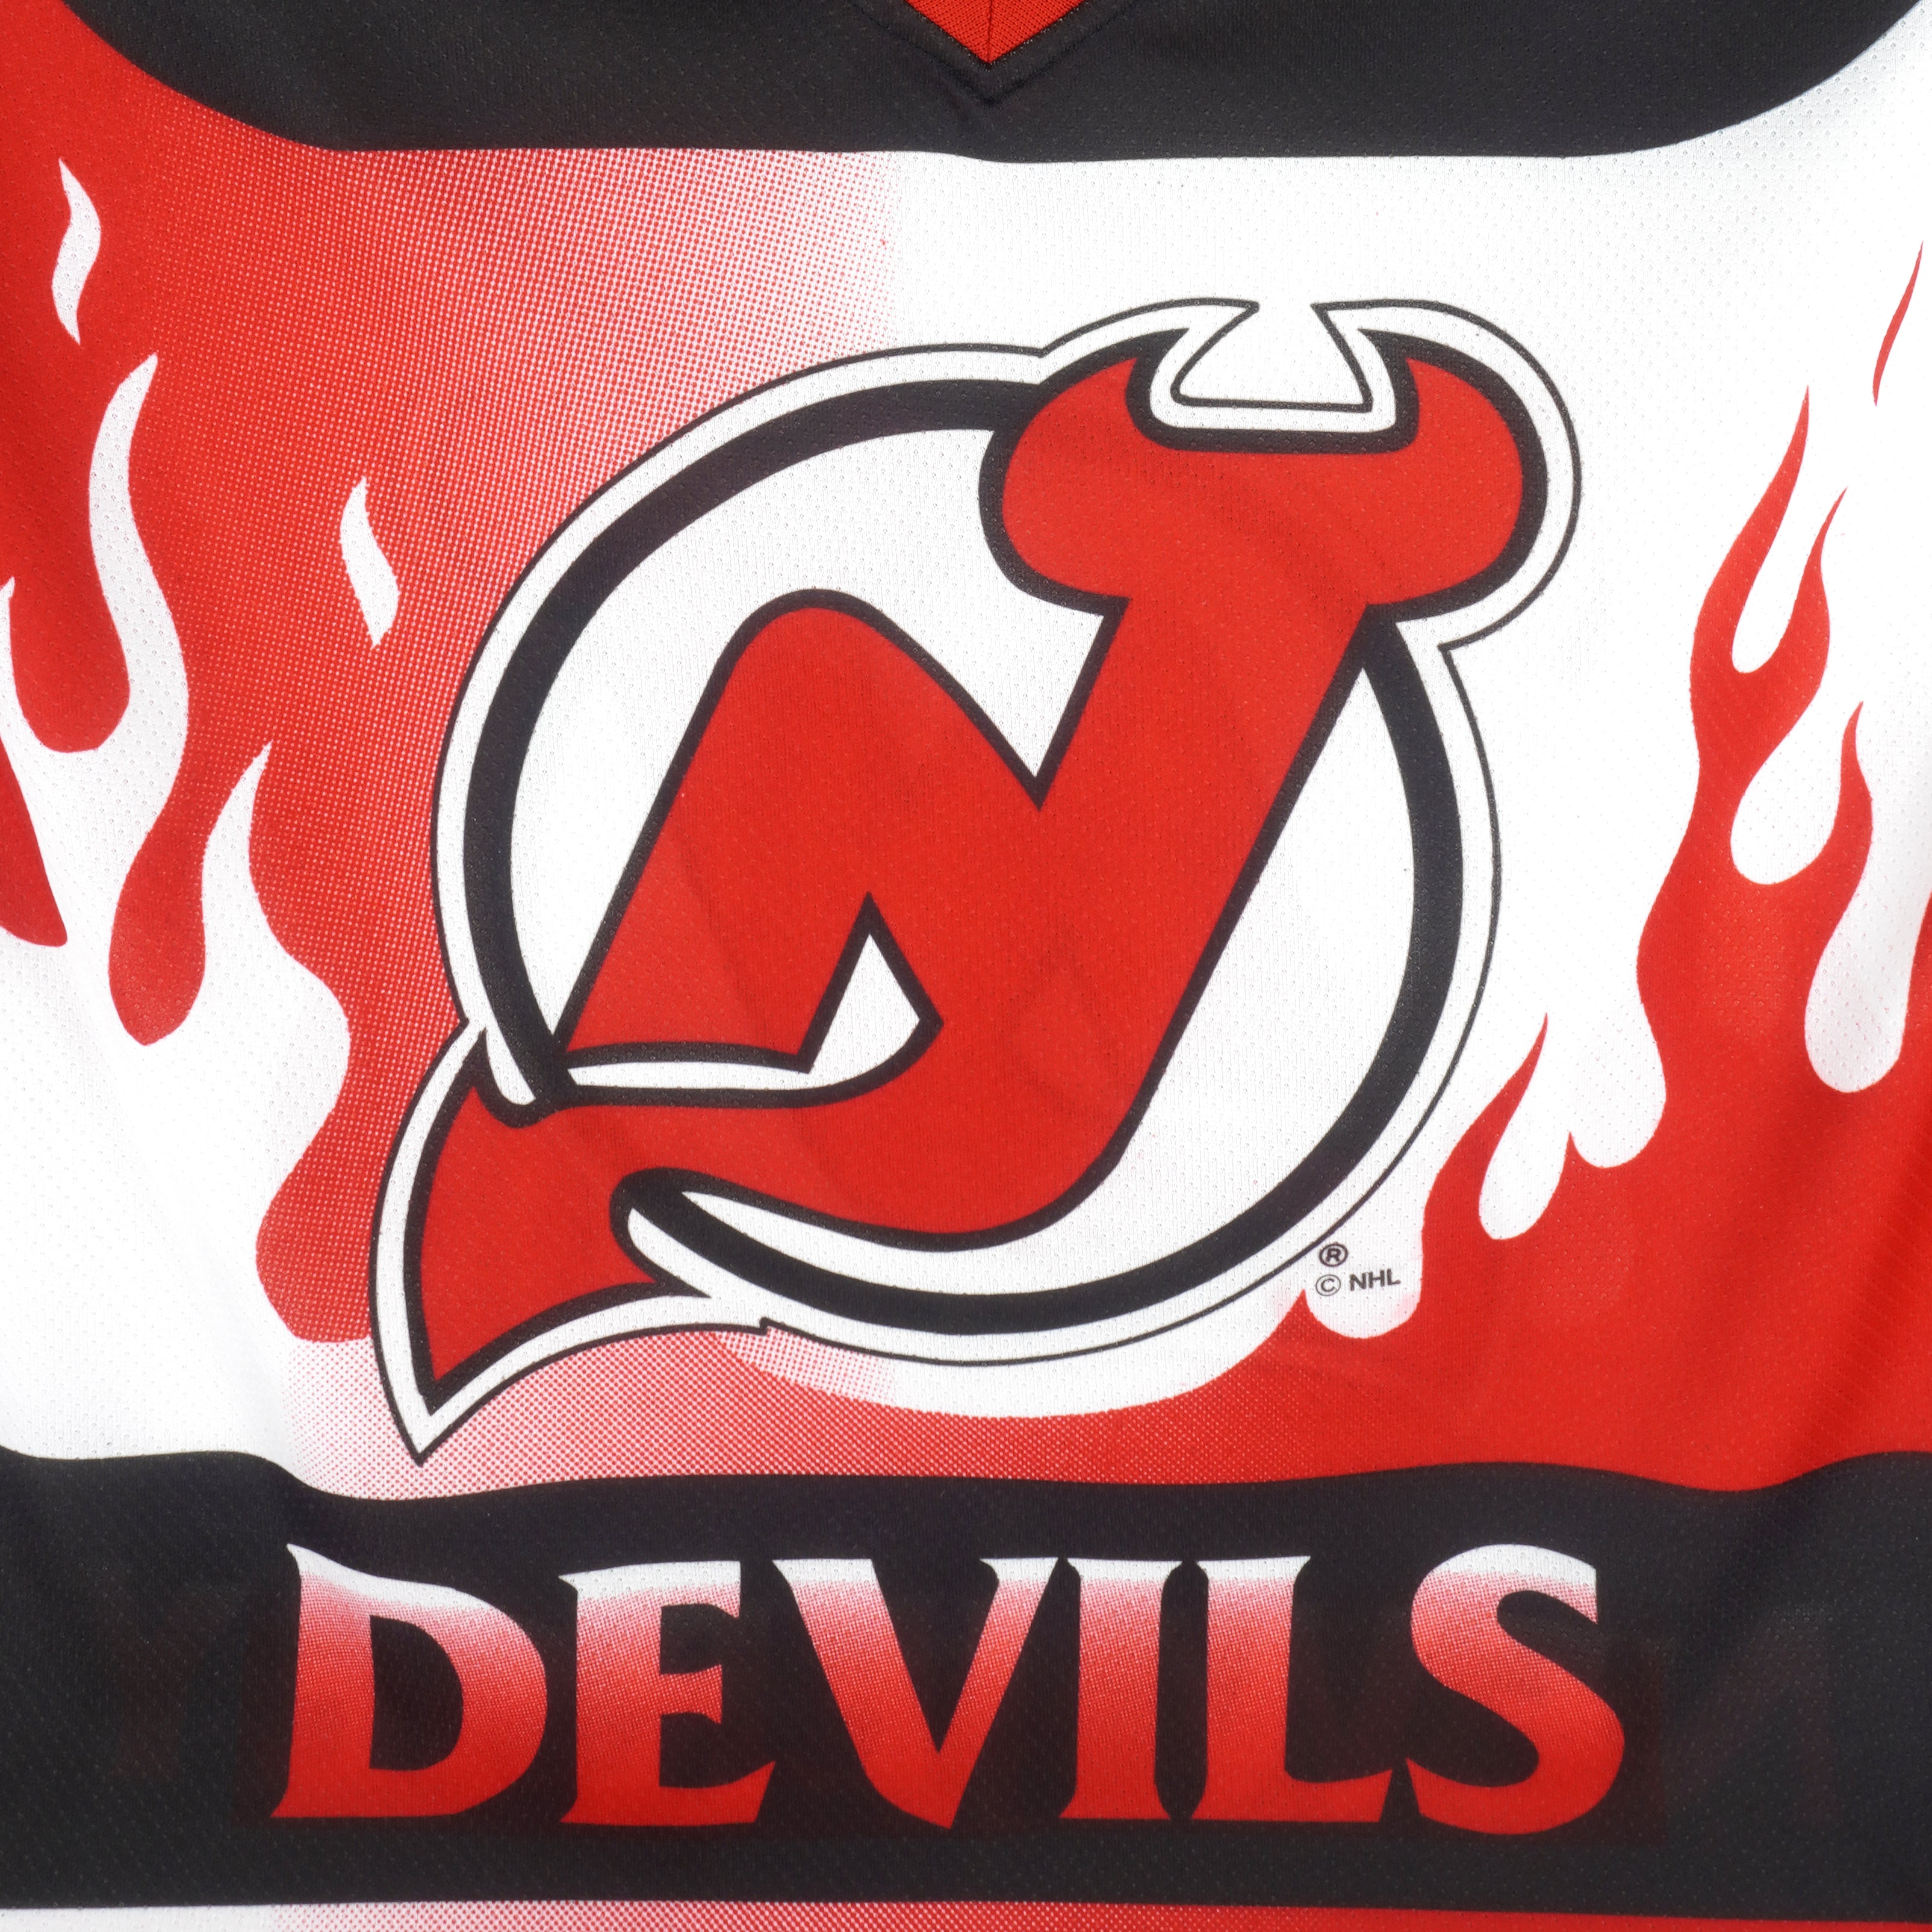 New Jersey Devils Apparel, Devils Heritage Jersey, Devils Gear, New Jersey Devils  Shop